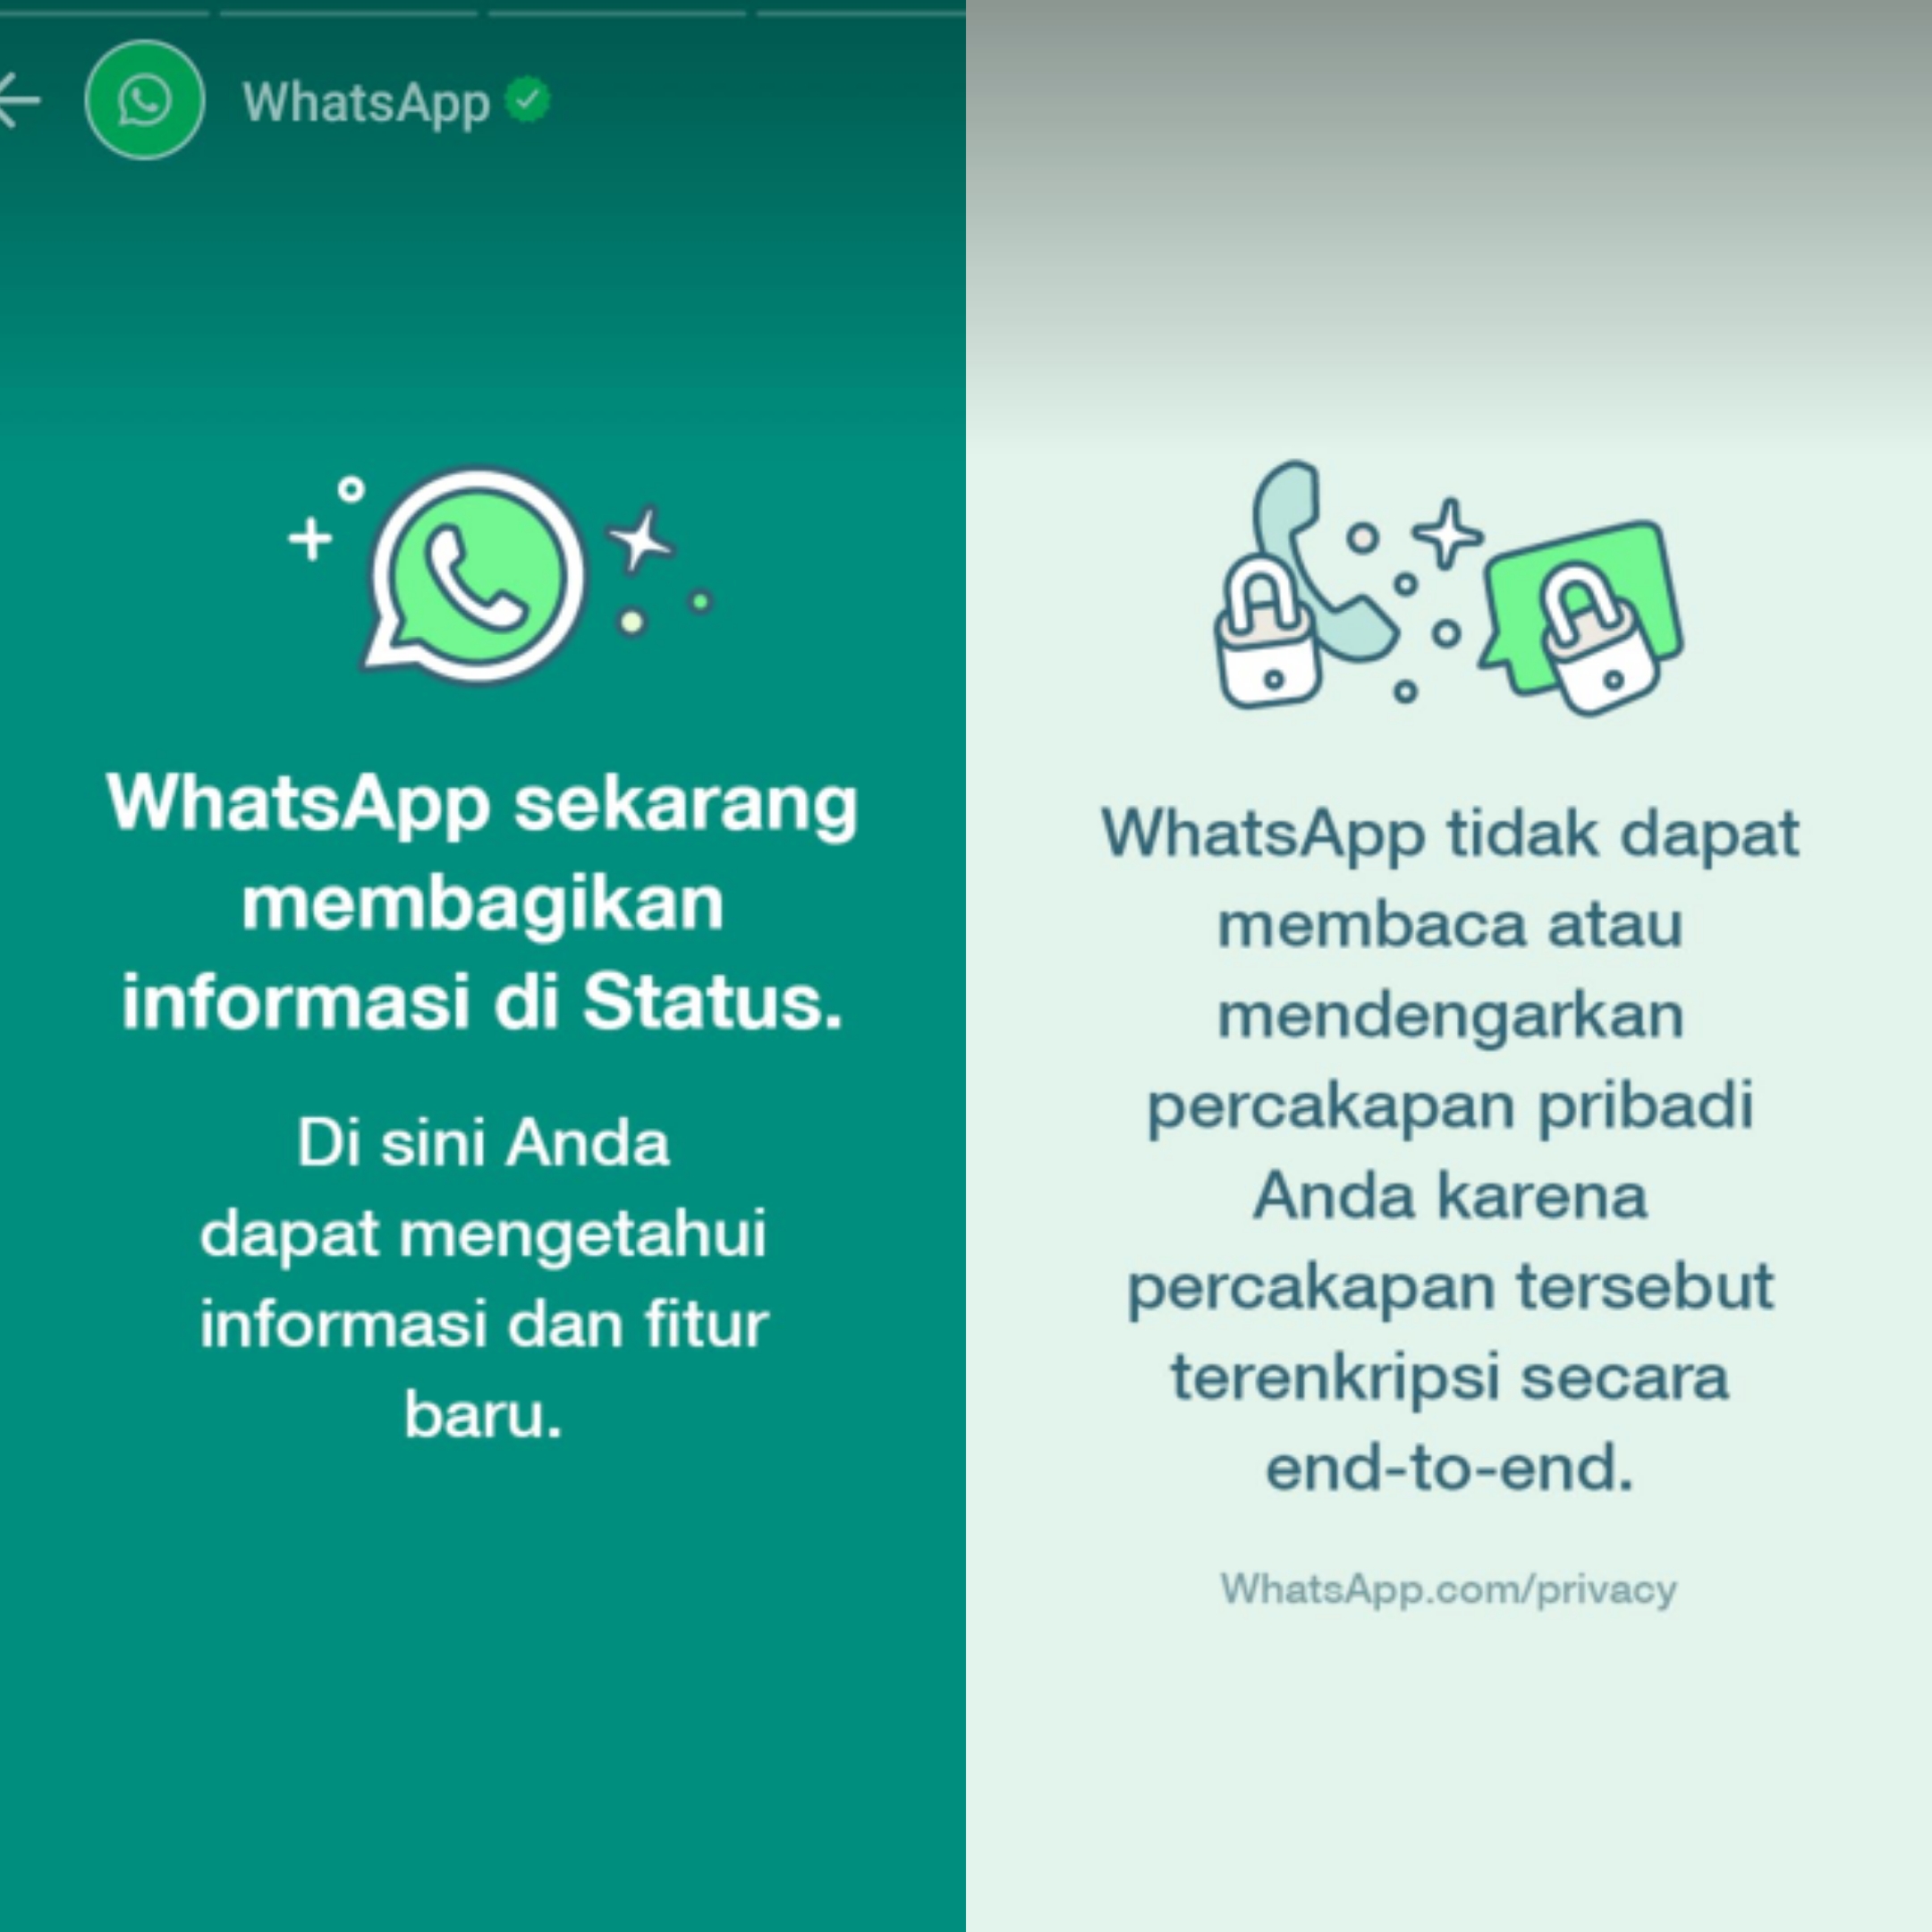 WhatsApp membuat status yang menjelaskan tentang fitur dan kebijakan baru, maupun informasi lainnya.